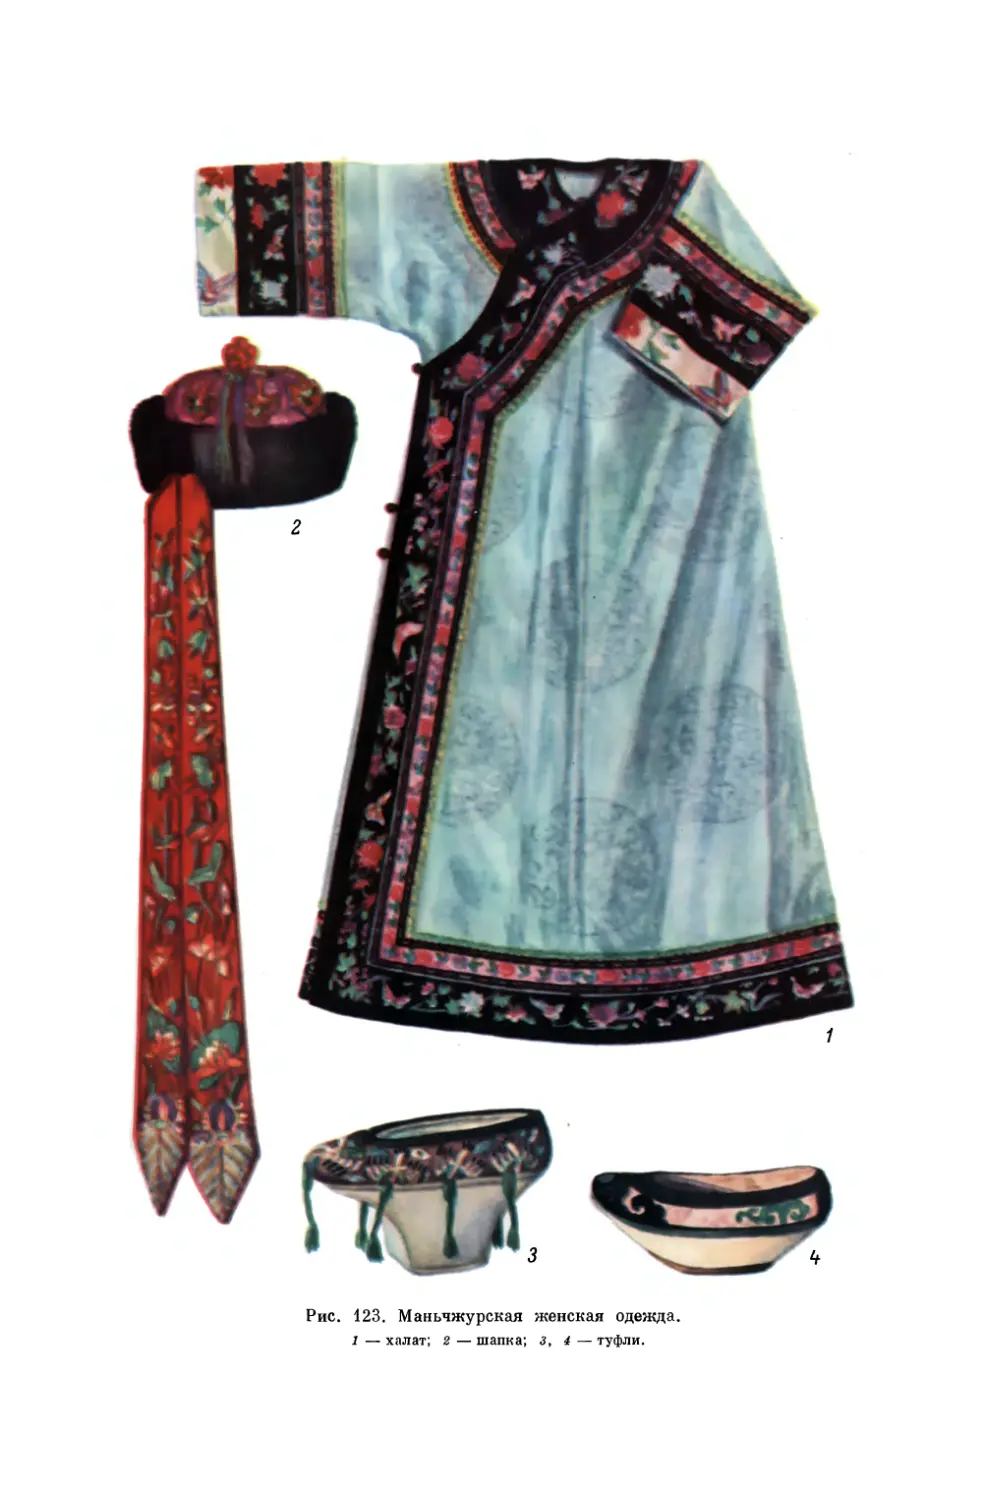 Вклейка. Маньчжурская женская одежда